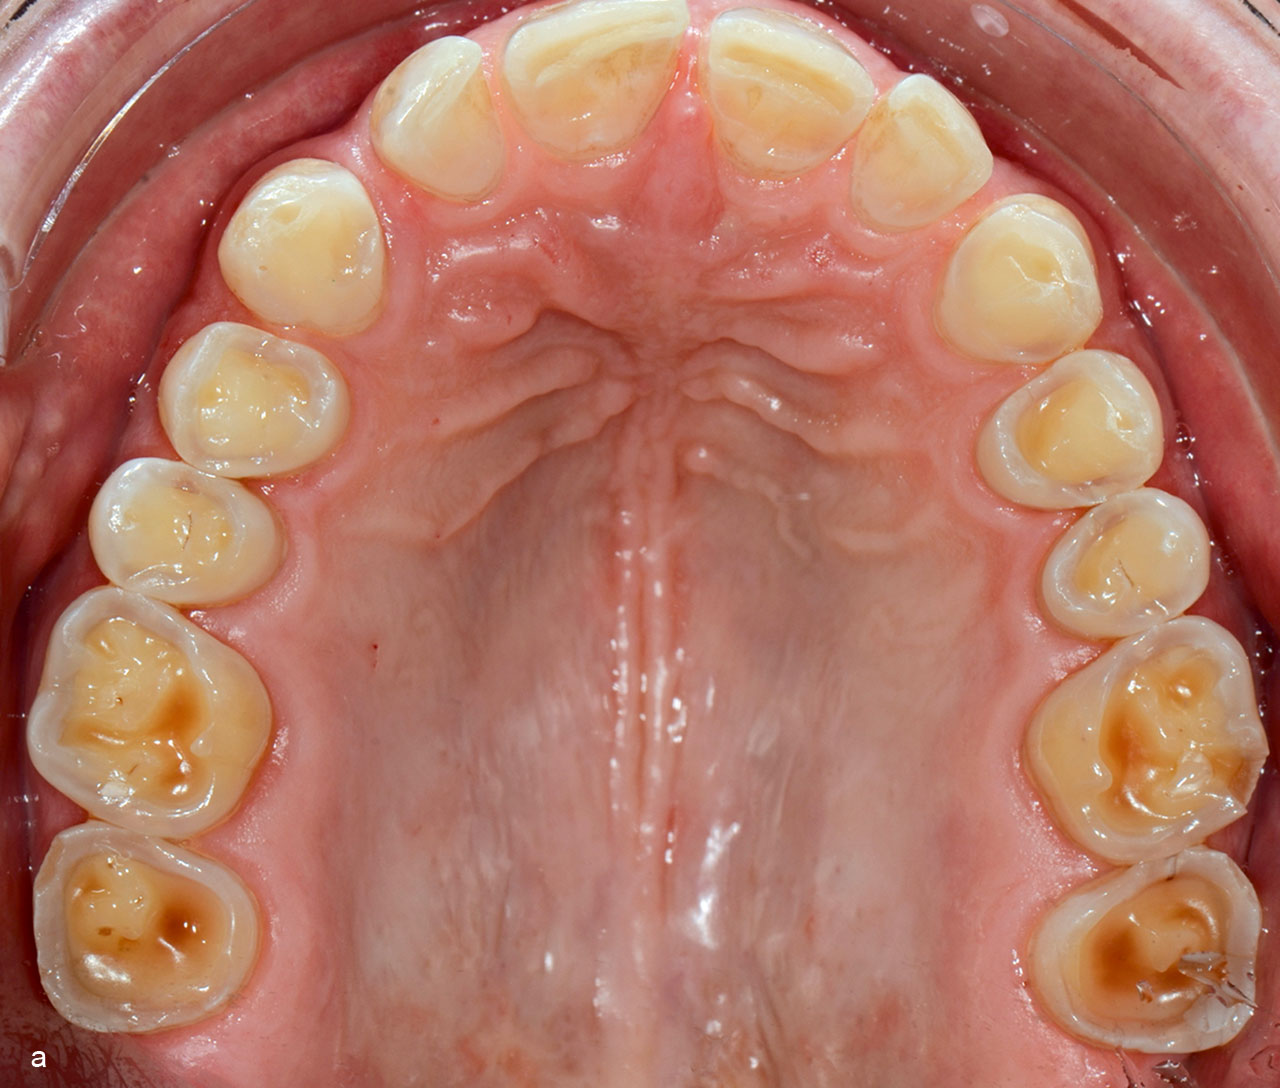 Abb. 1 a bis c Gebiss mit starkem erosiven Zahnhart­substanzverlust. Besonders auffällig – und abgrenzend zu einem durch Attrition verursachten Zahnhartsubstanz­verlust – sind die muldenförmigen Vertiefungen mit zum Teil „ausgefransten“ Rändern.